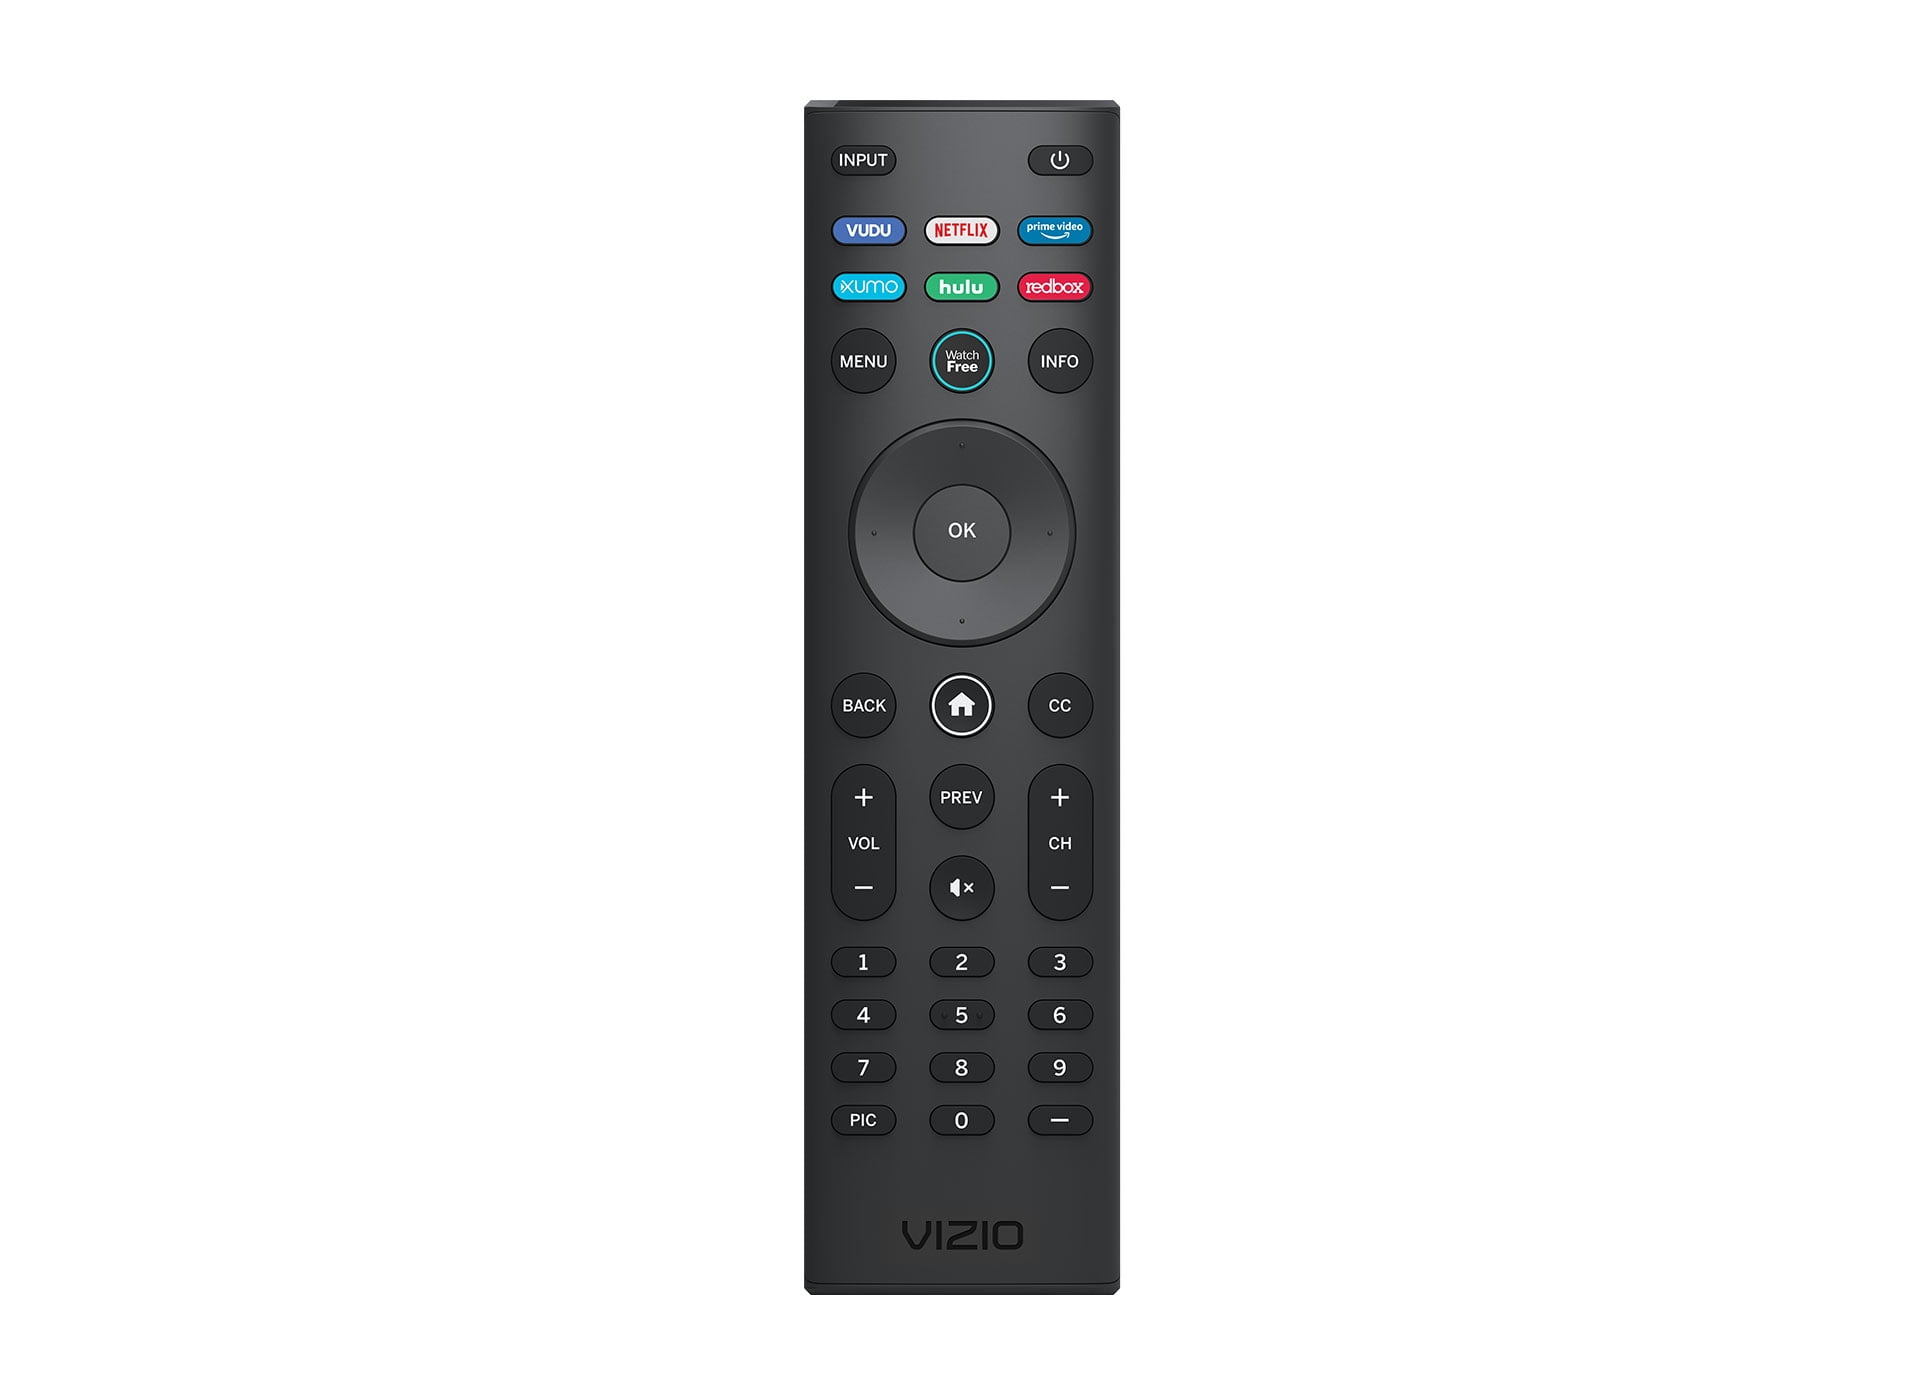 Pre-Owned Vizio OEM Remote Control for VIZIO Smart TV D50x-G9 D65x-G4  D55x-G1 D40f-G9 D43f-F1 D70-F3 V505-G9 D32h-F1 D24h-G9 E70-F3 D43-F1  V705-G3